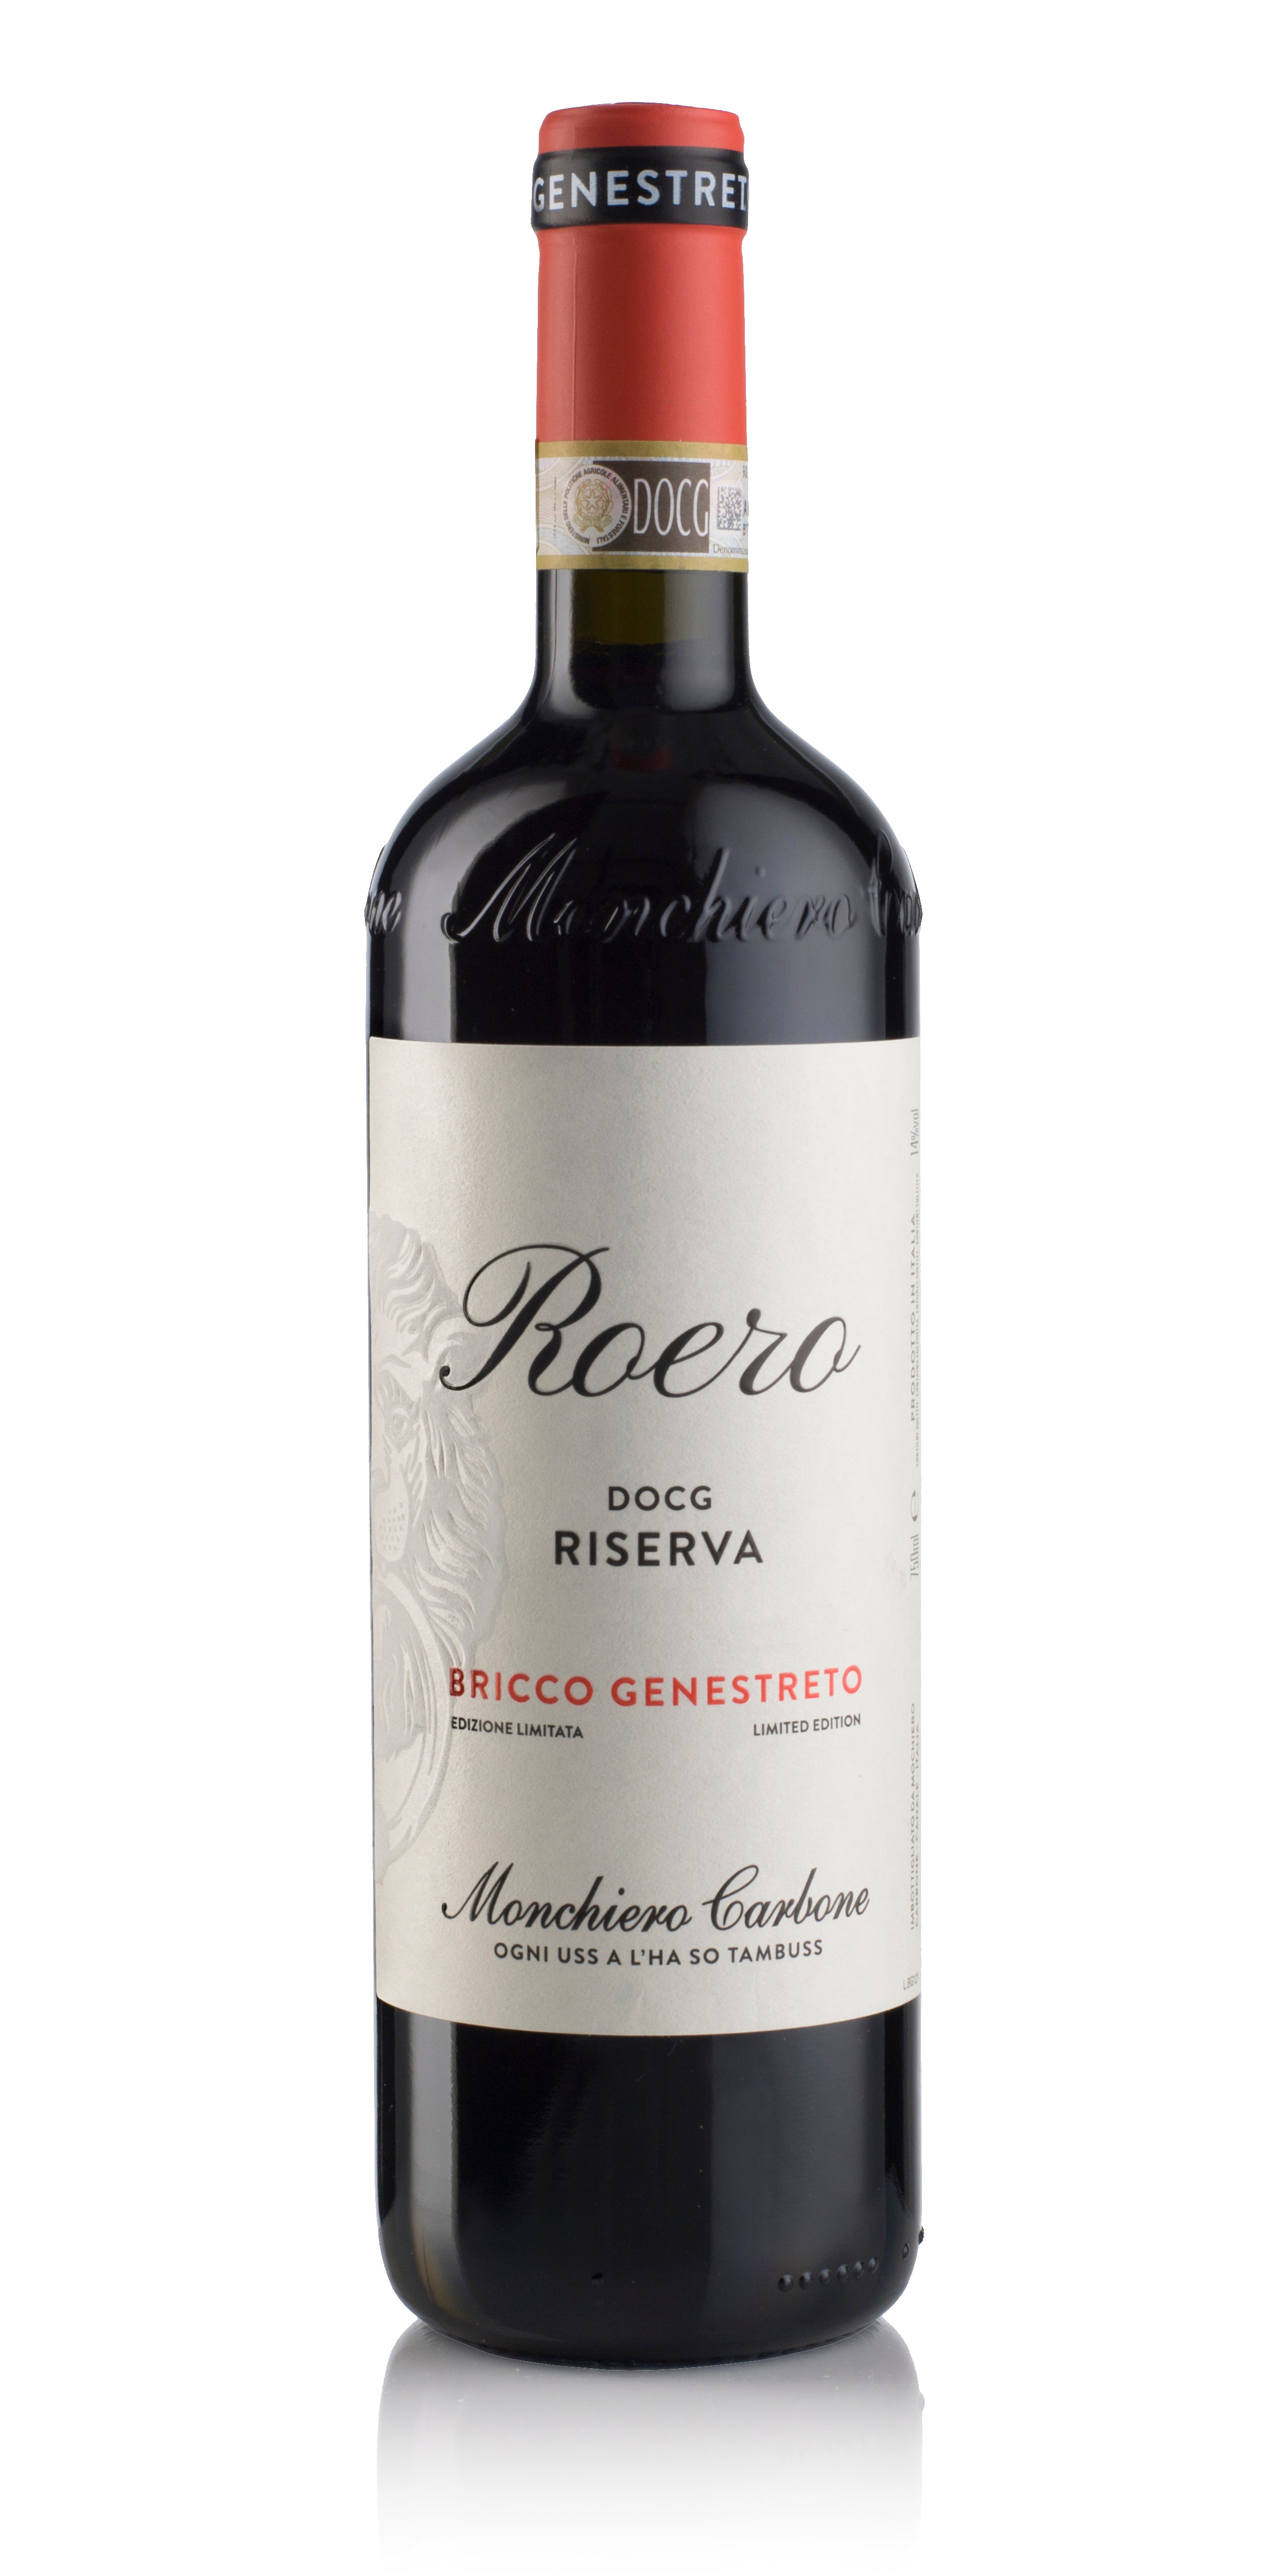 Bricco Genestreto bottle